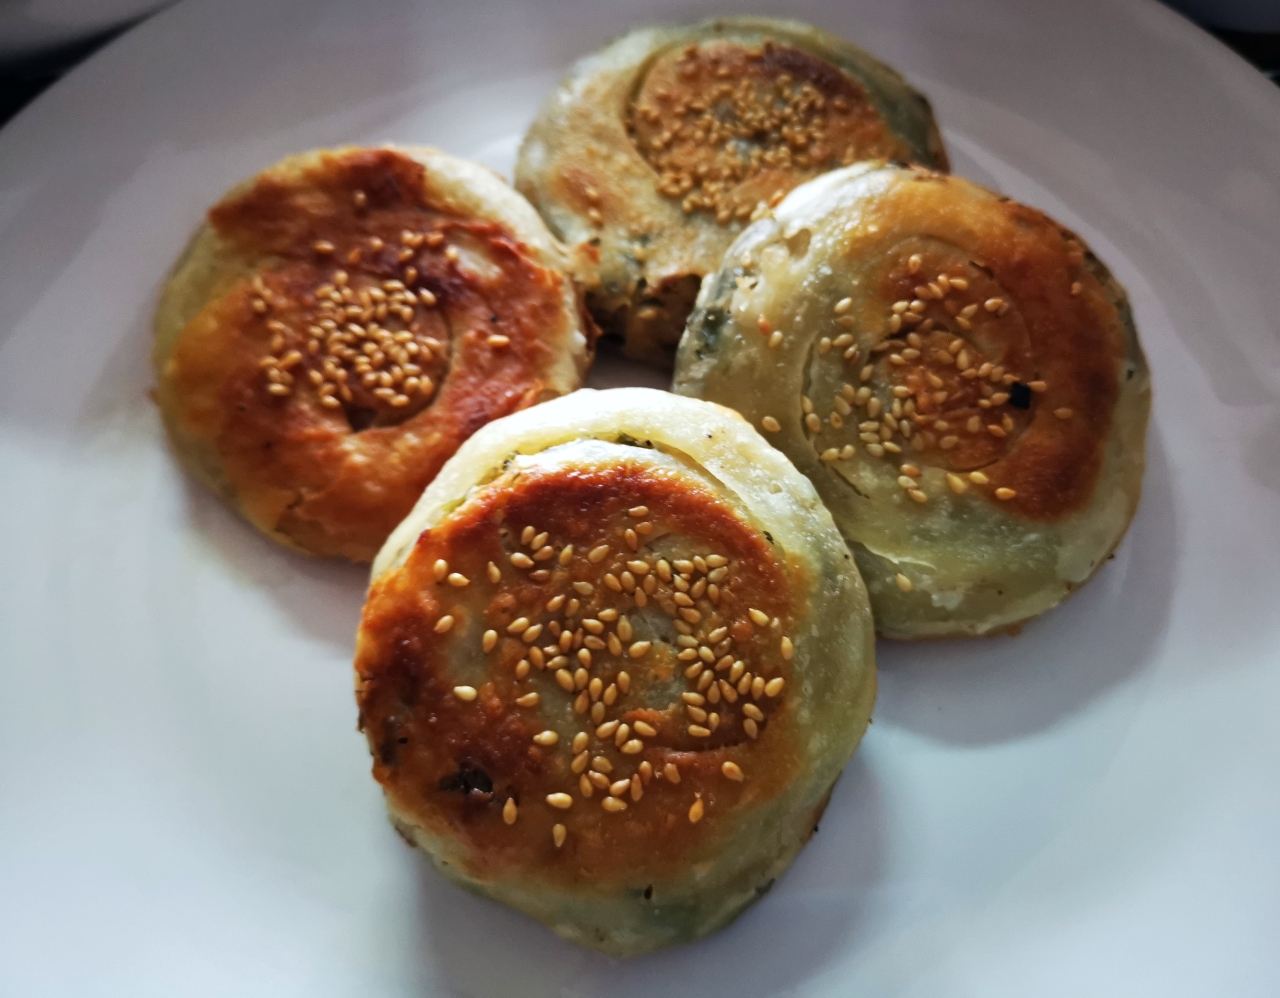 馕/新疆烤馕/馕饼/新疆油馕/新疆烤馕与批萨。